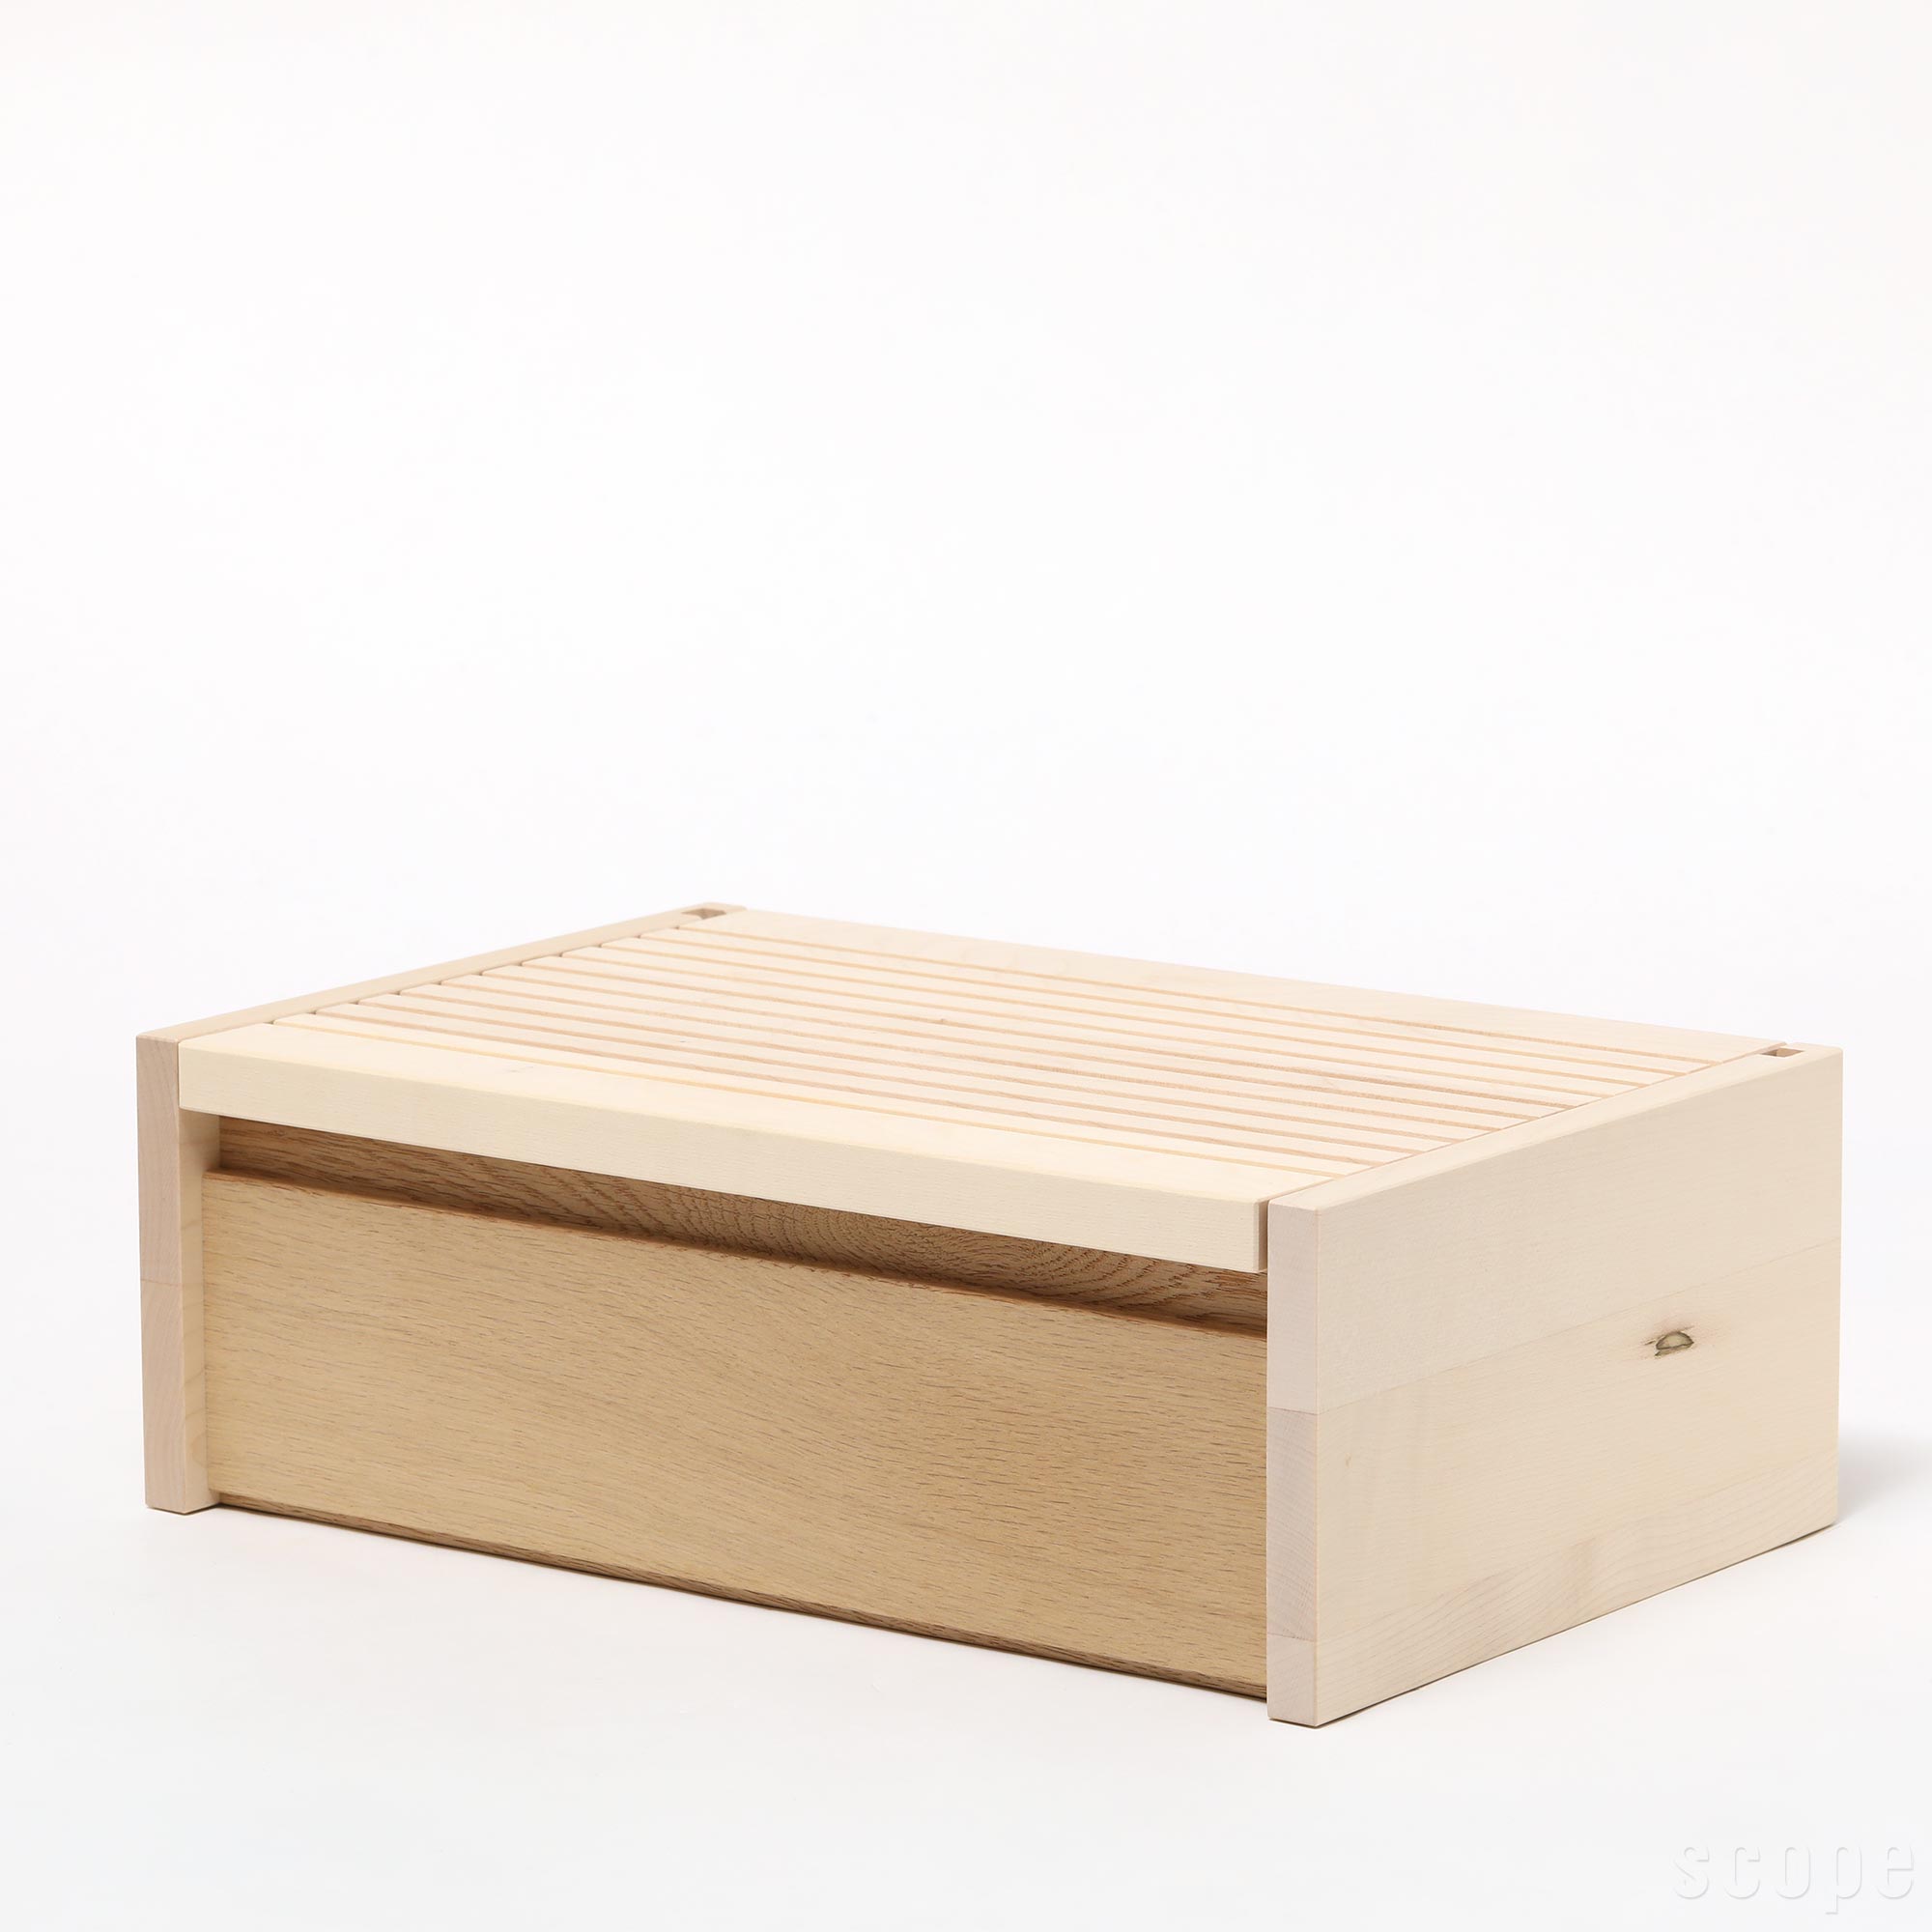 【0235】サイド バイ サイド / ブレッドボックス [SIDE BY SIDE / Bread Box]